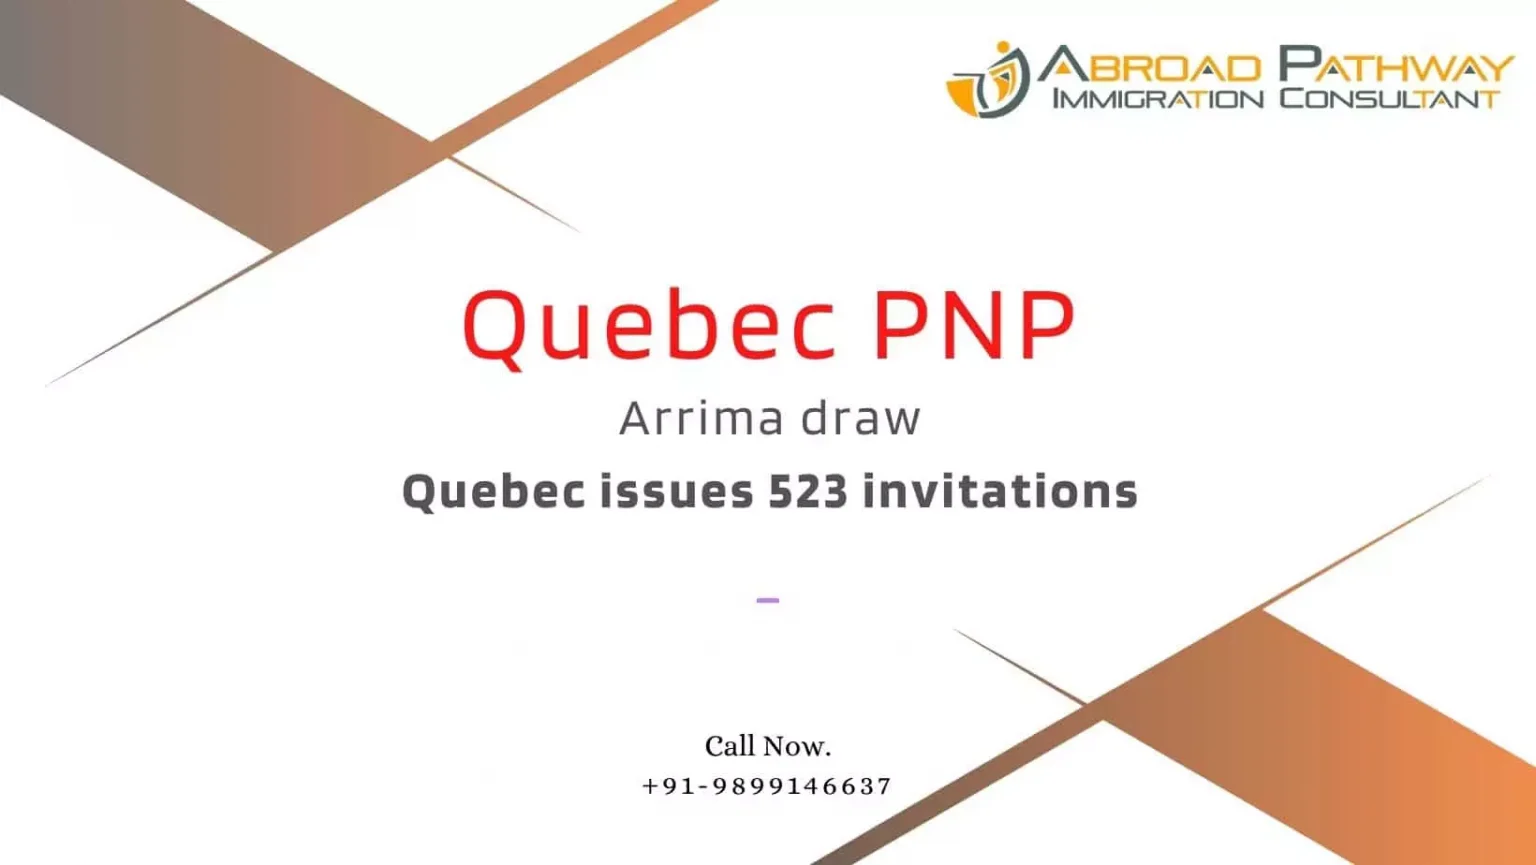 Latest Quebec Arrima Draw invites 523 immigrants